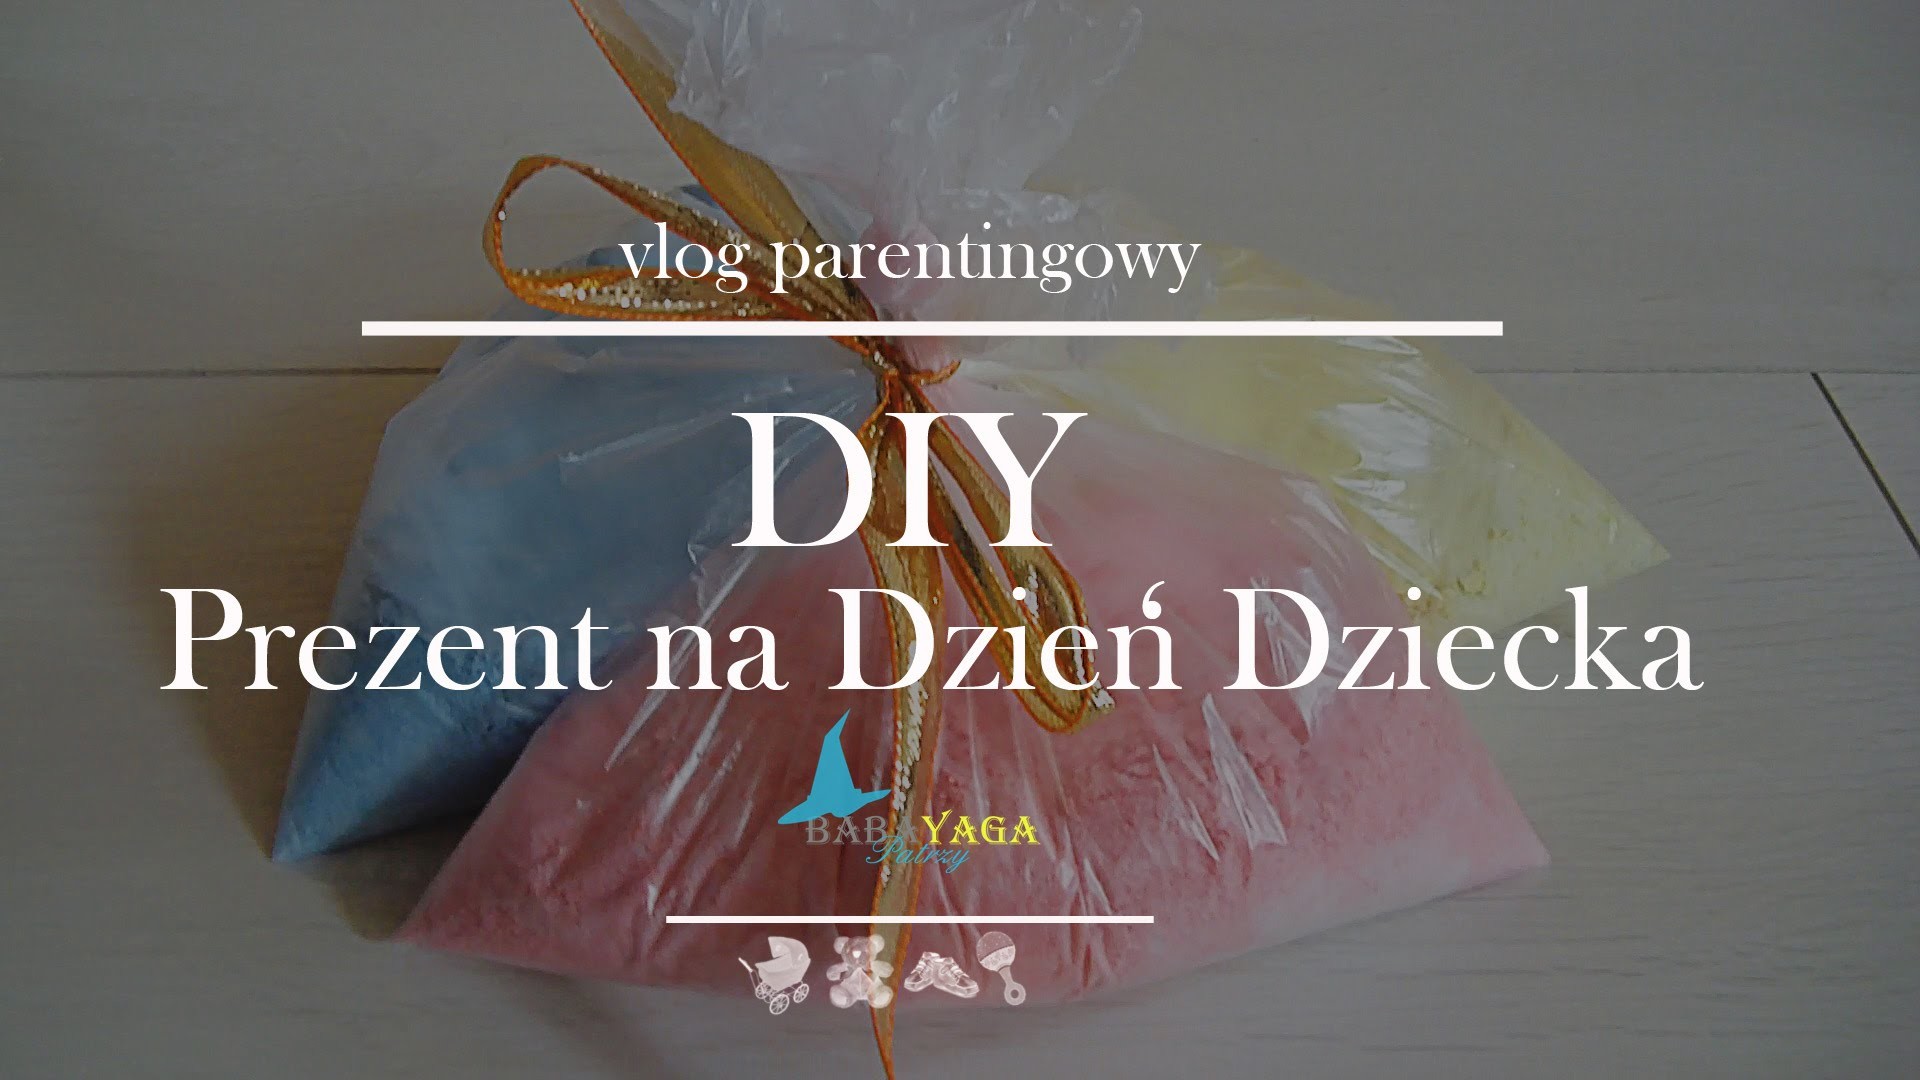 DIY Prezent na dzień dziecka | BabaYaga Patrzy Vlog Parentingowy